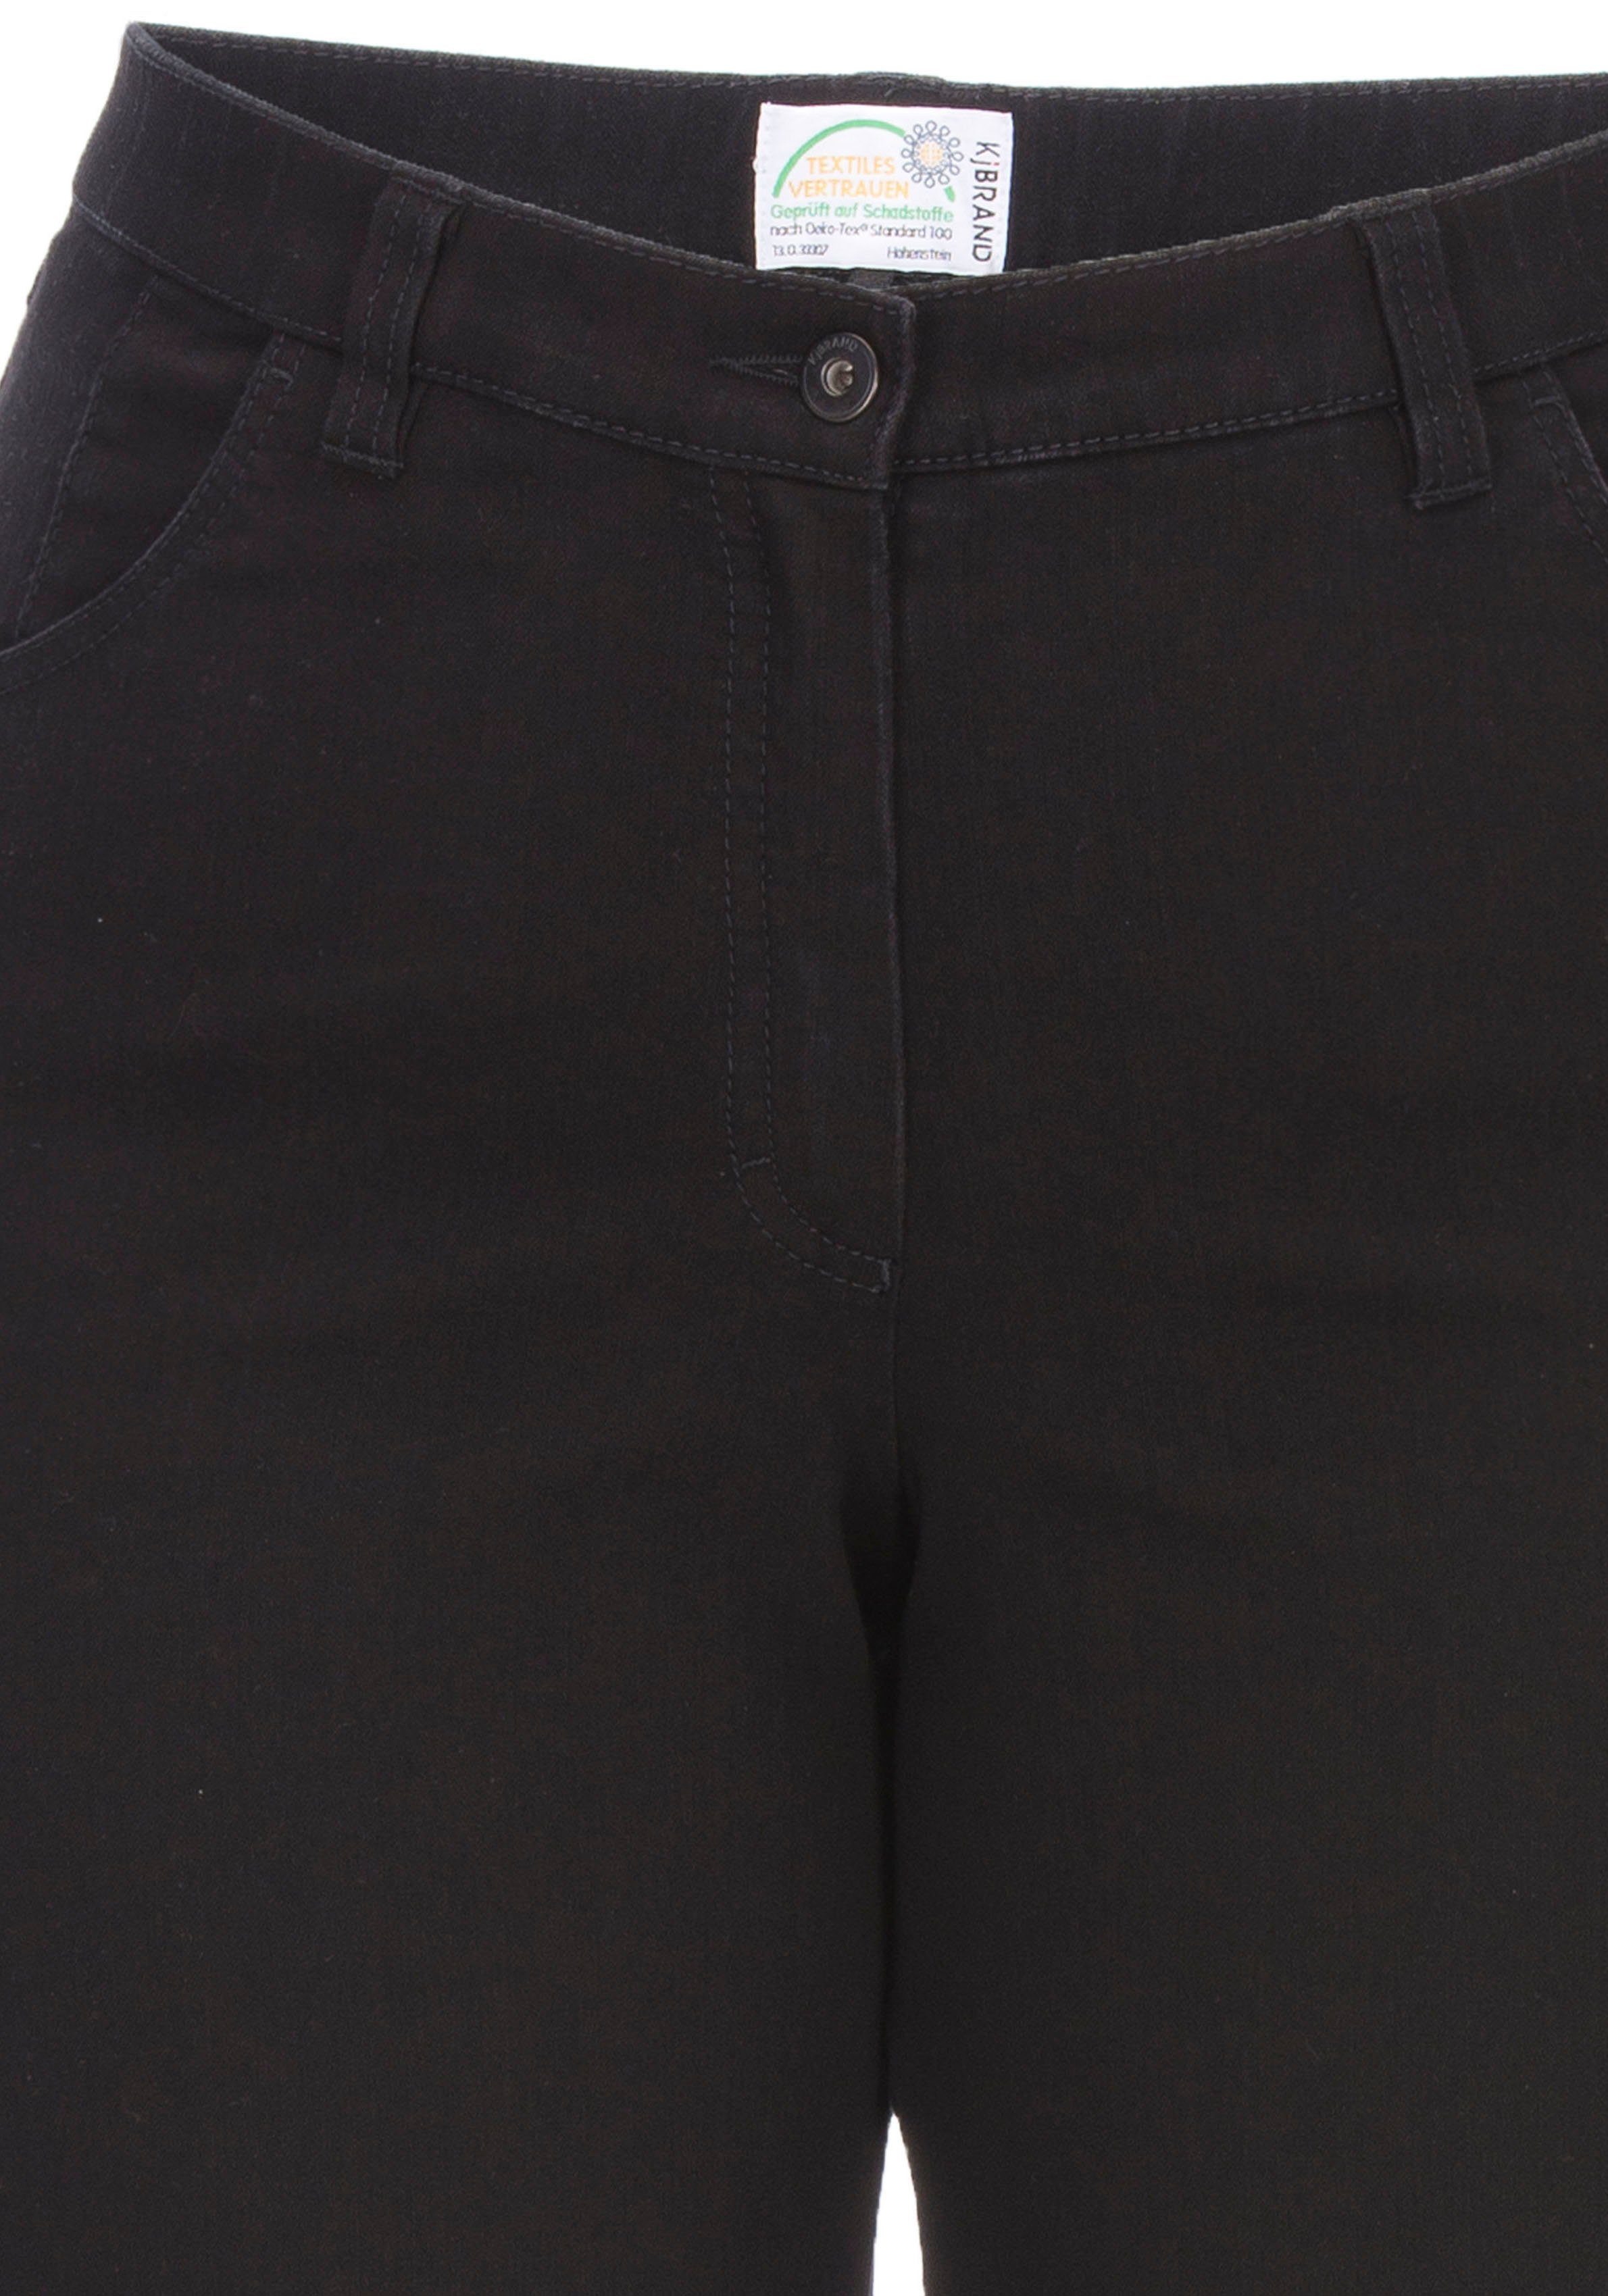 Babsie Stretch Denim schwarz Stretch-Anteil mit KjBRAND Stretch-Jeans